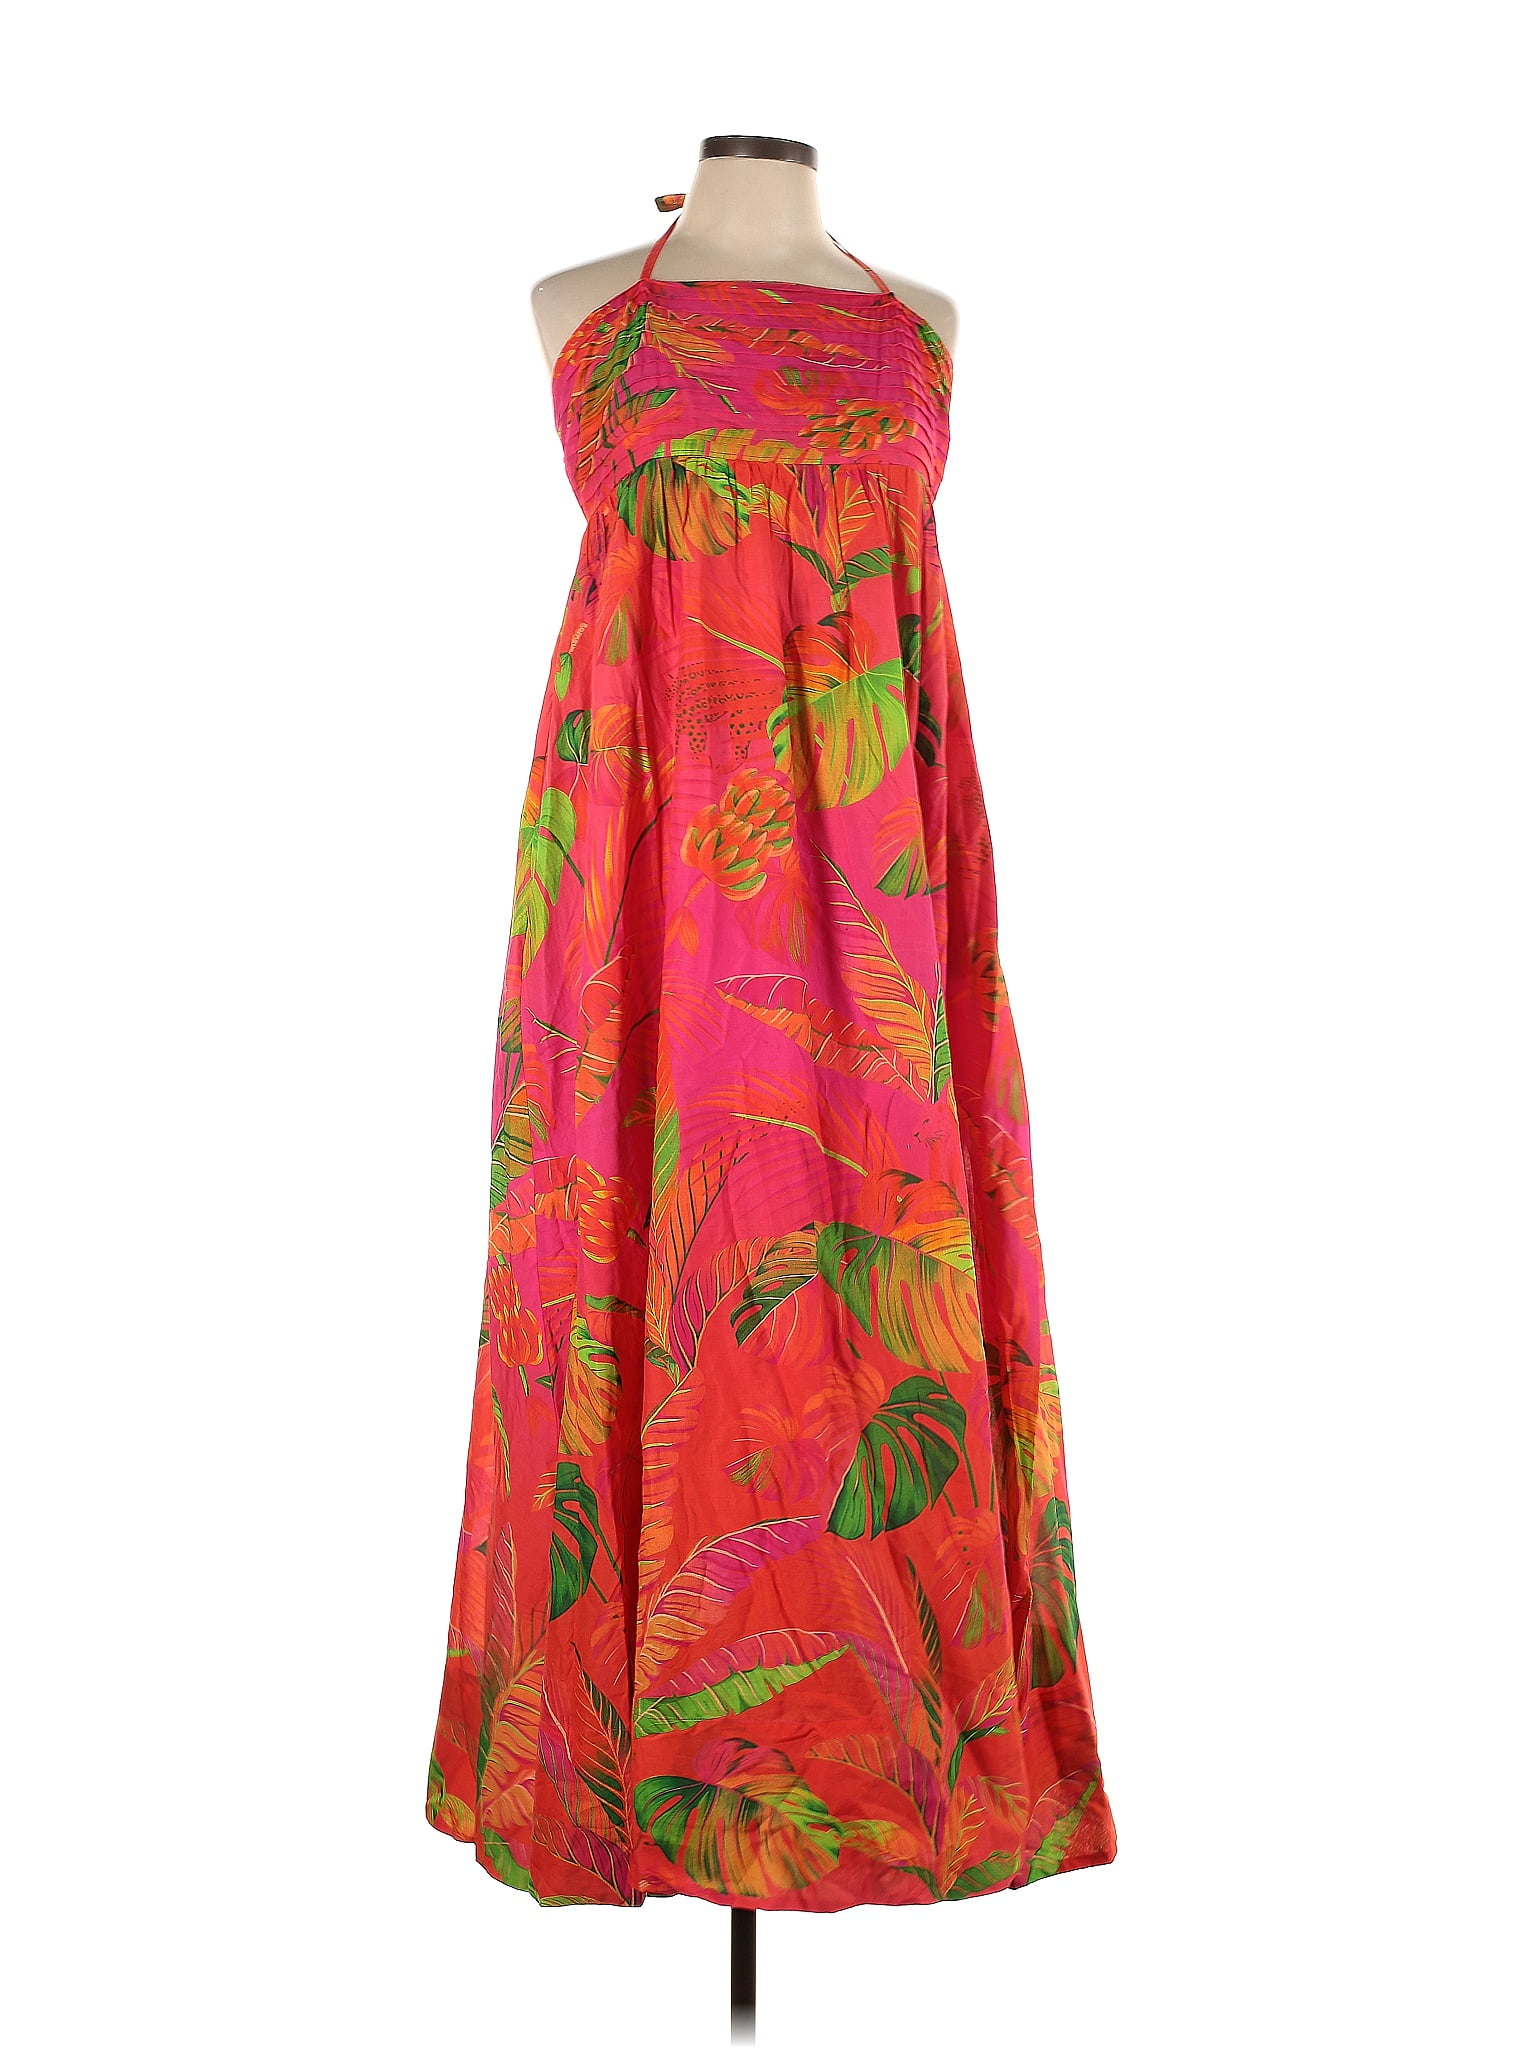 FARM Rio 100% Cotton Multi Color Red Casual Dress Size L - 17% off ...